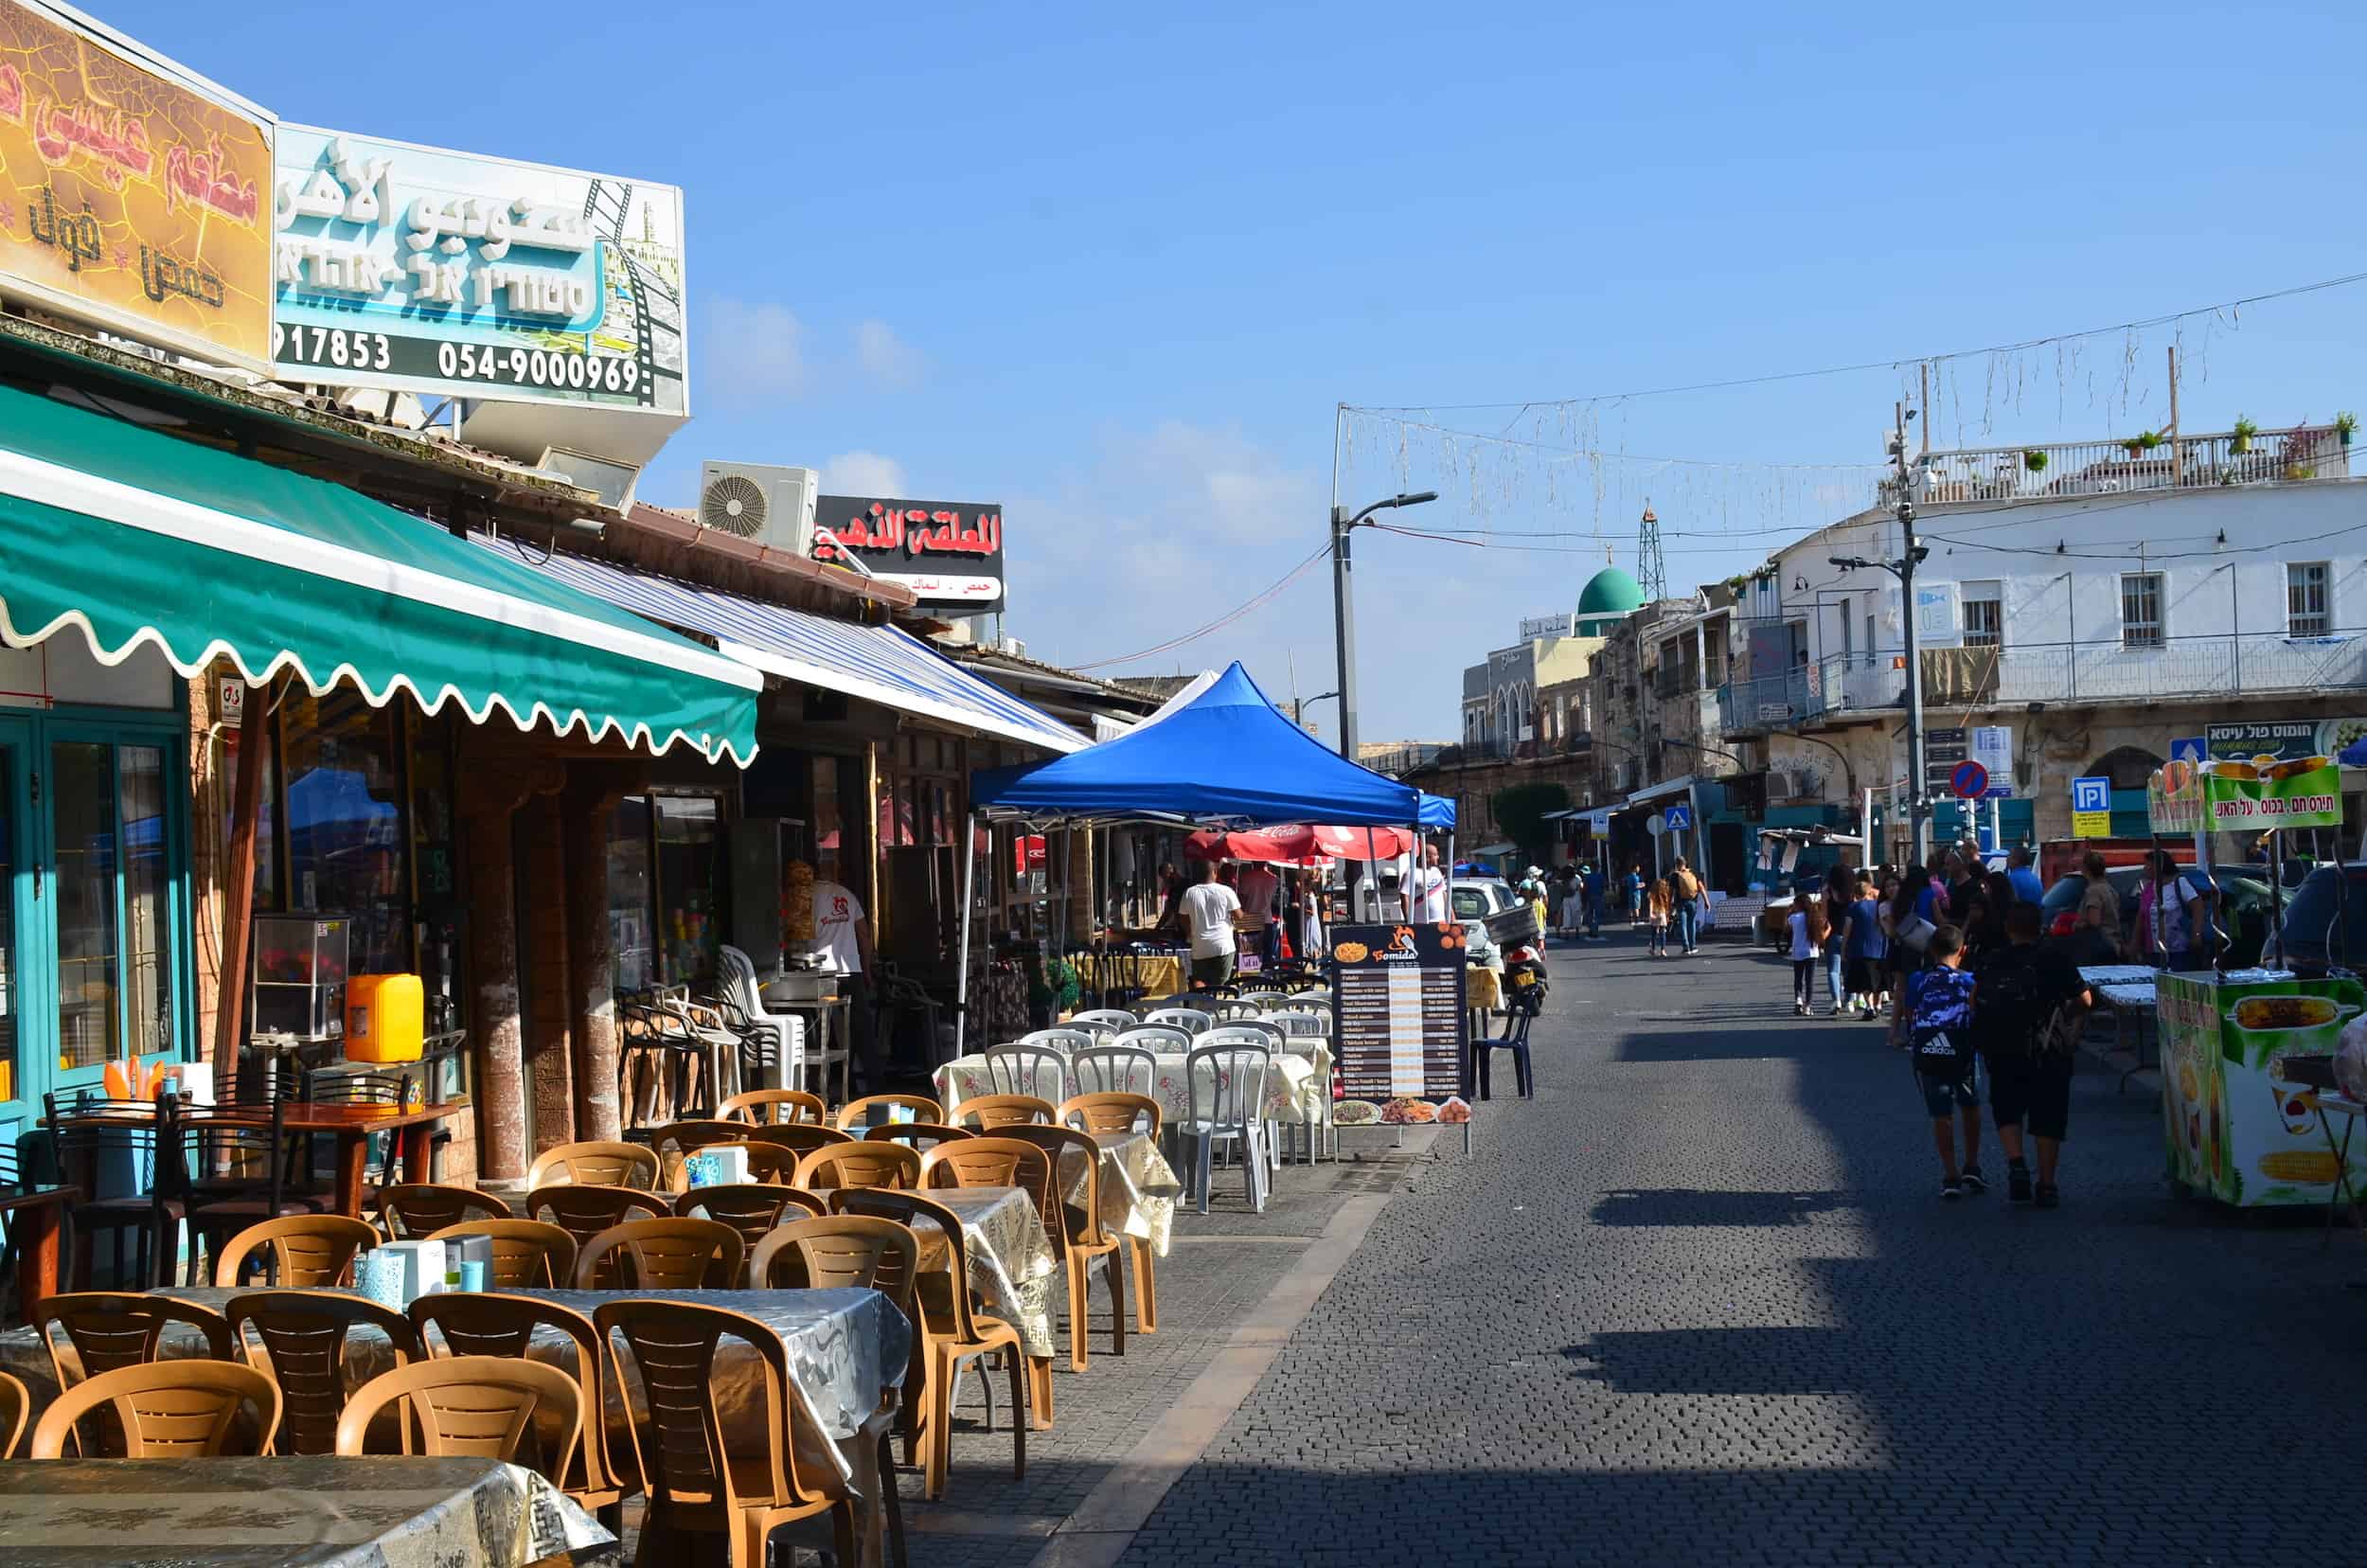 Salah ad Din Street in Acre, Israel